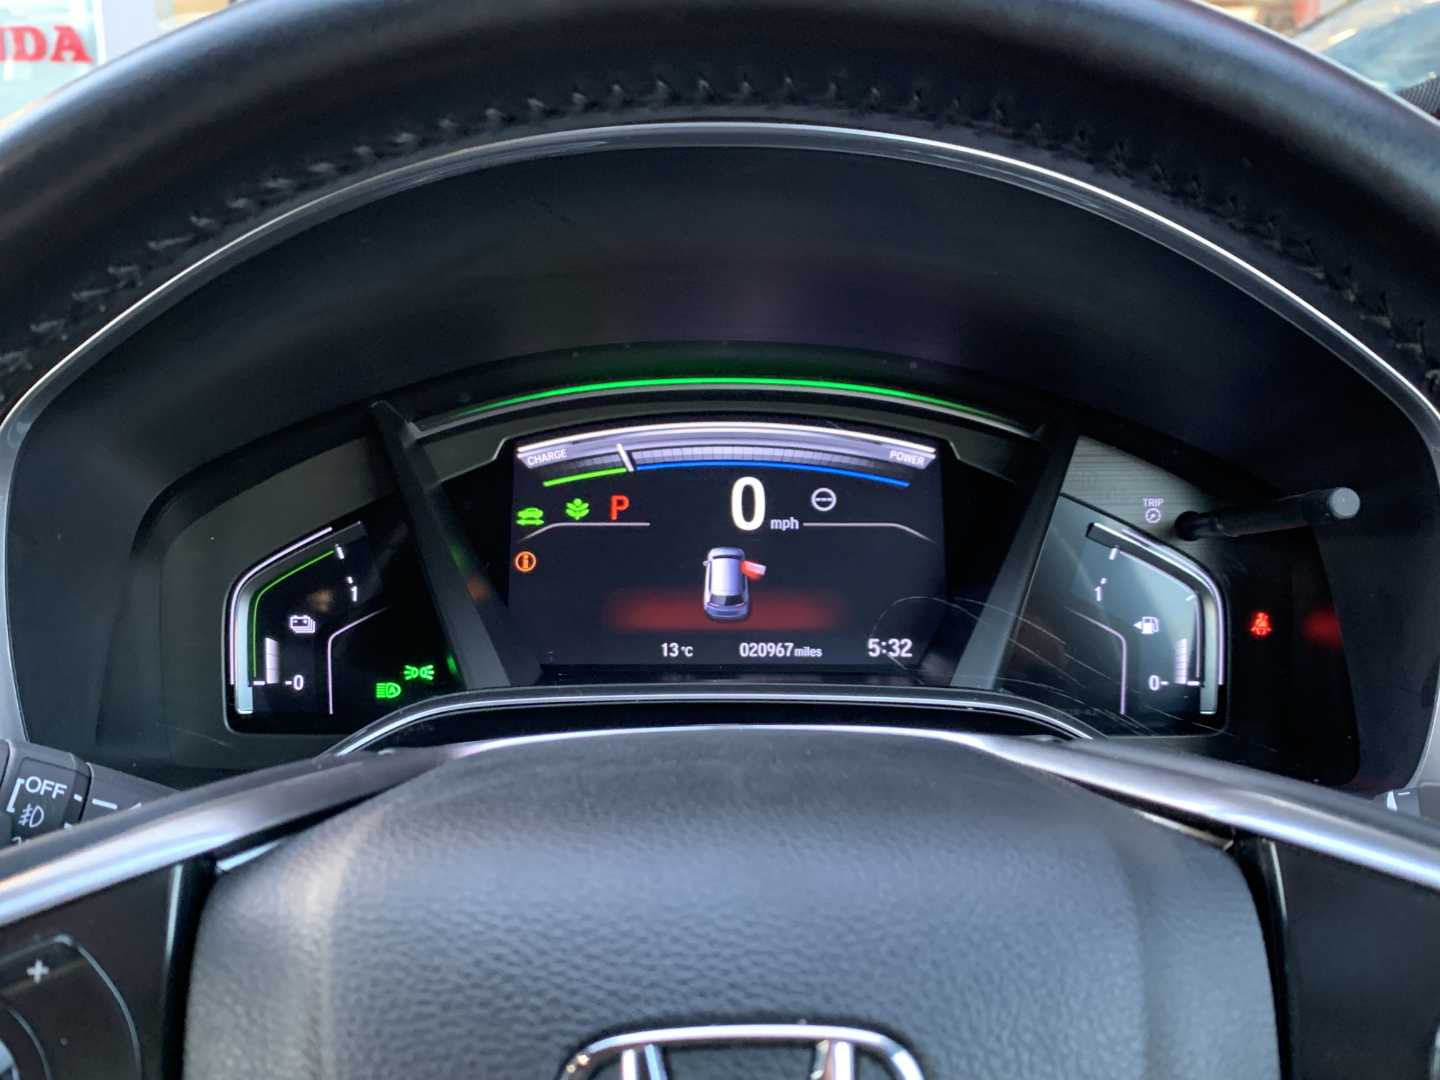 Honda CR-V 2.0 i-MMD Hybrid SR 5dr eCVT - Image 11